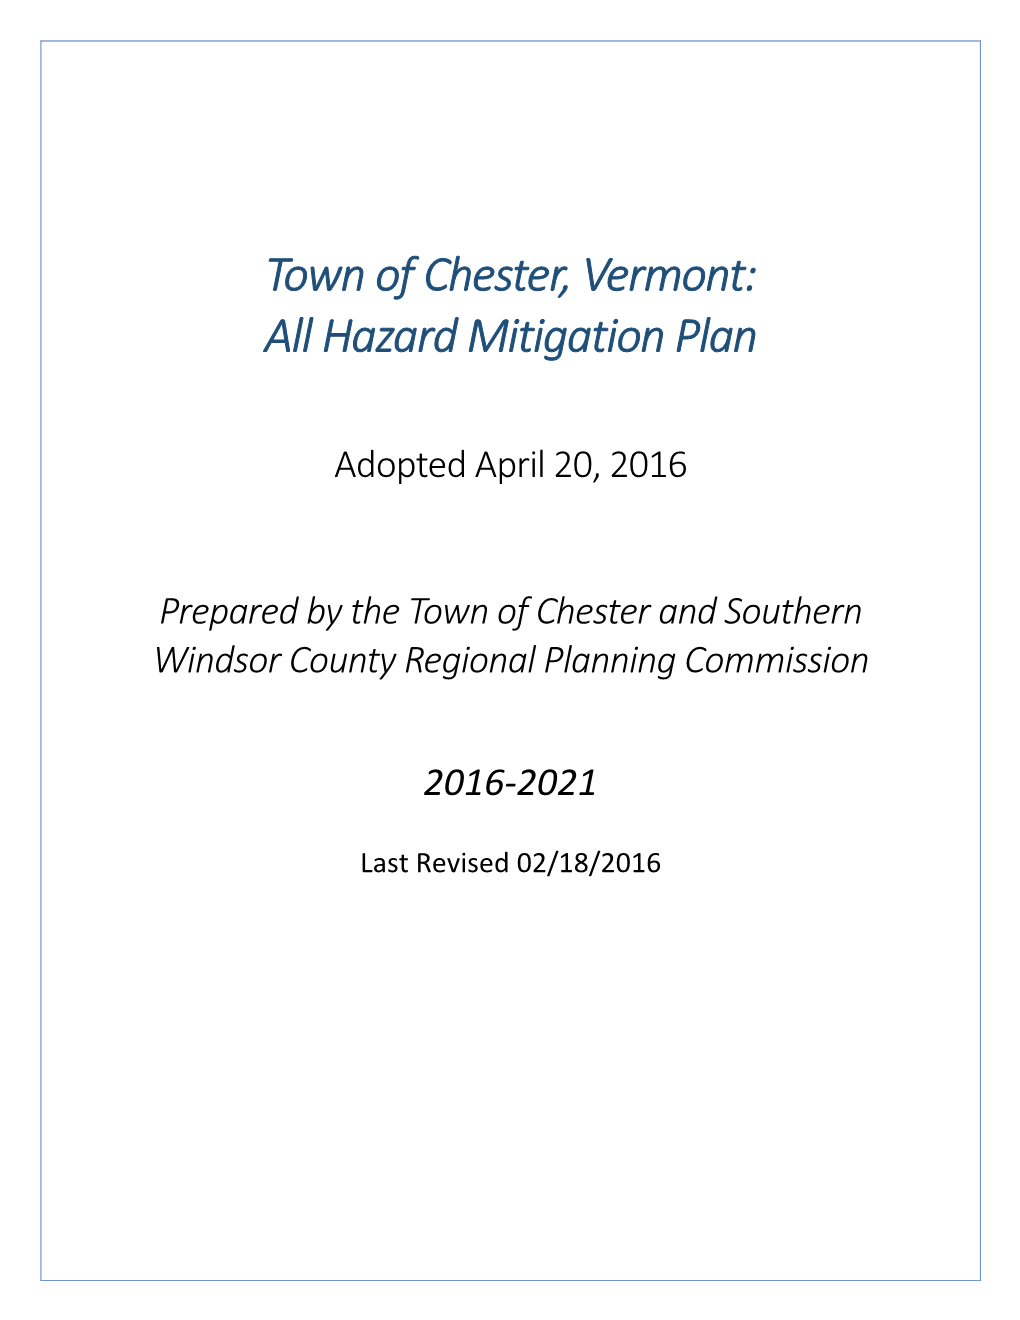 Town of Chester, Vermont: All Hazard Mitigation Plan